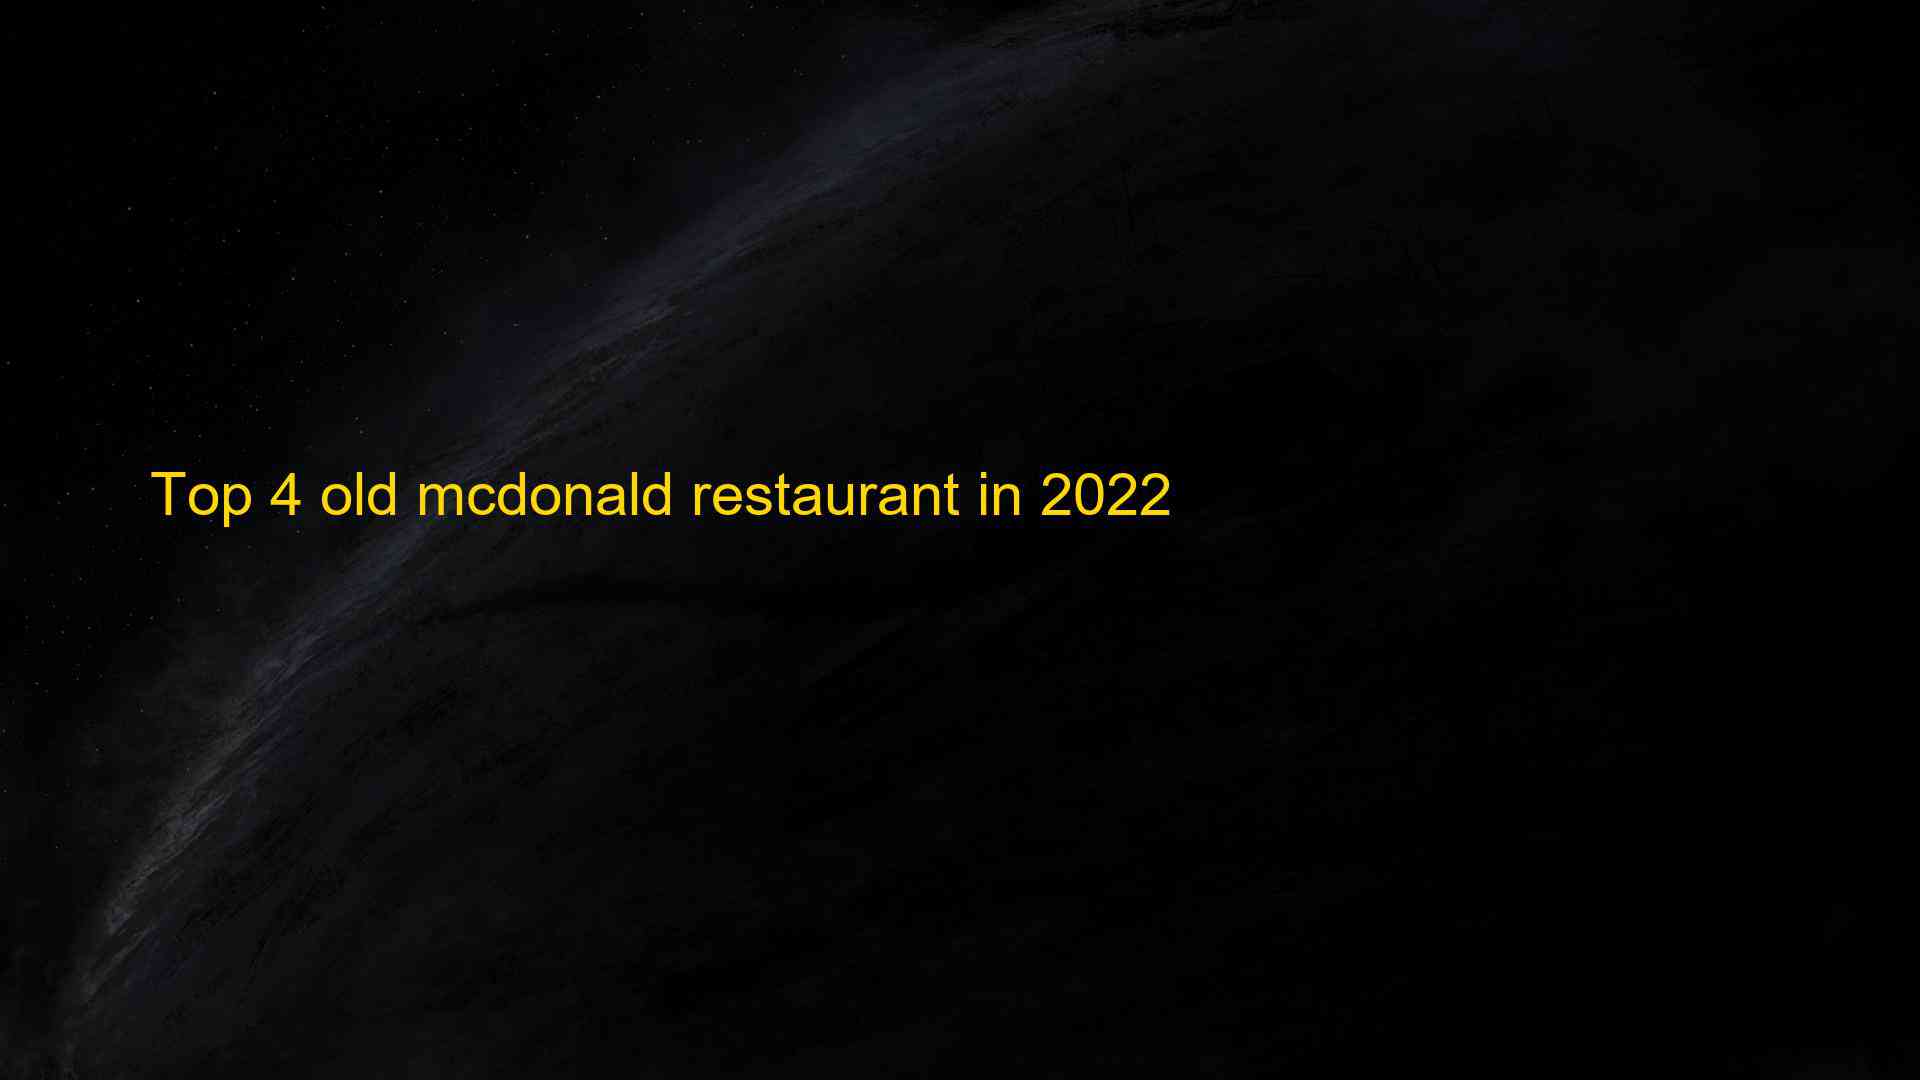 Top 4 old mcdonald restaurant in 2022 1663548761